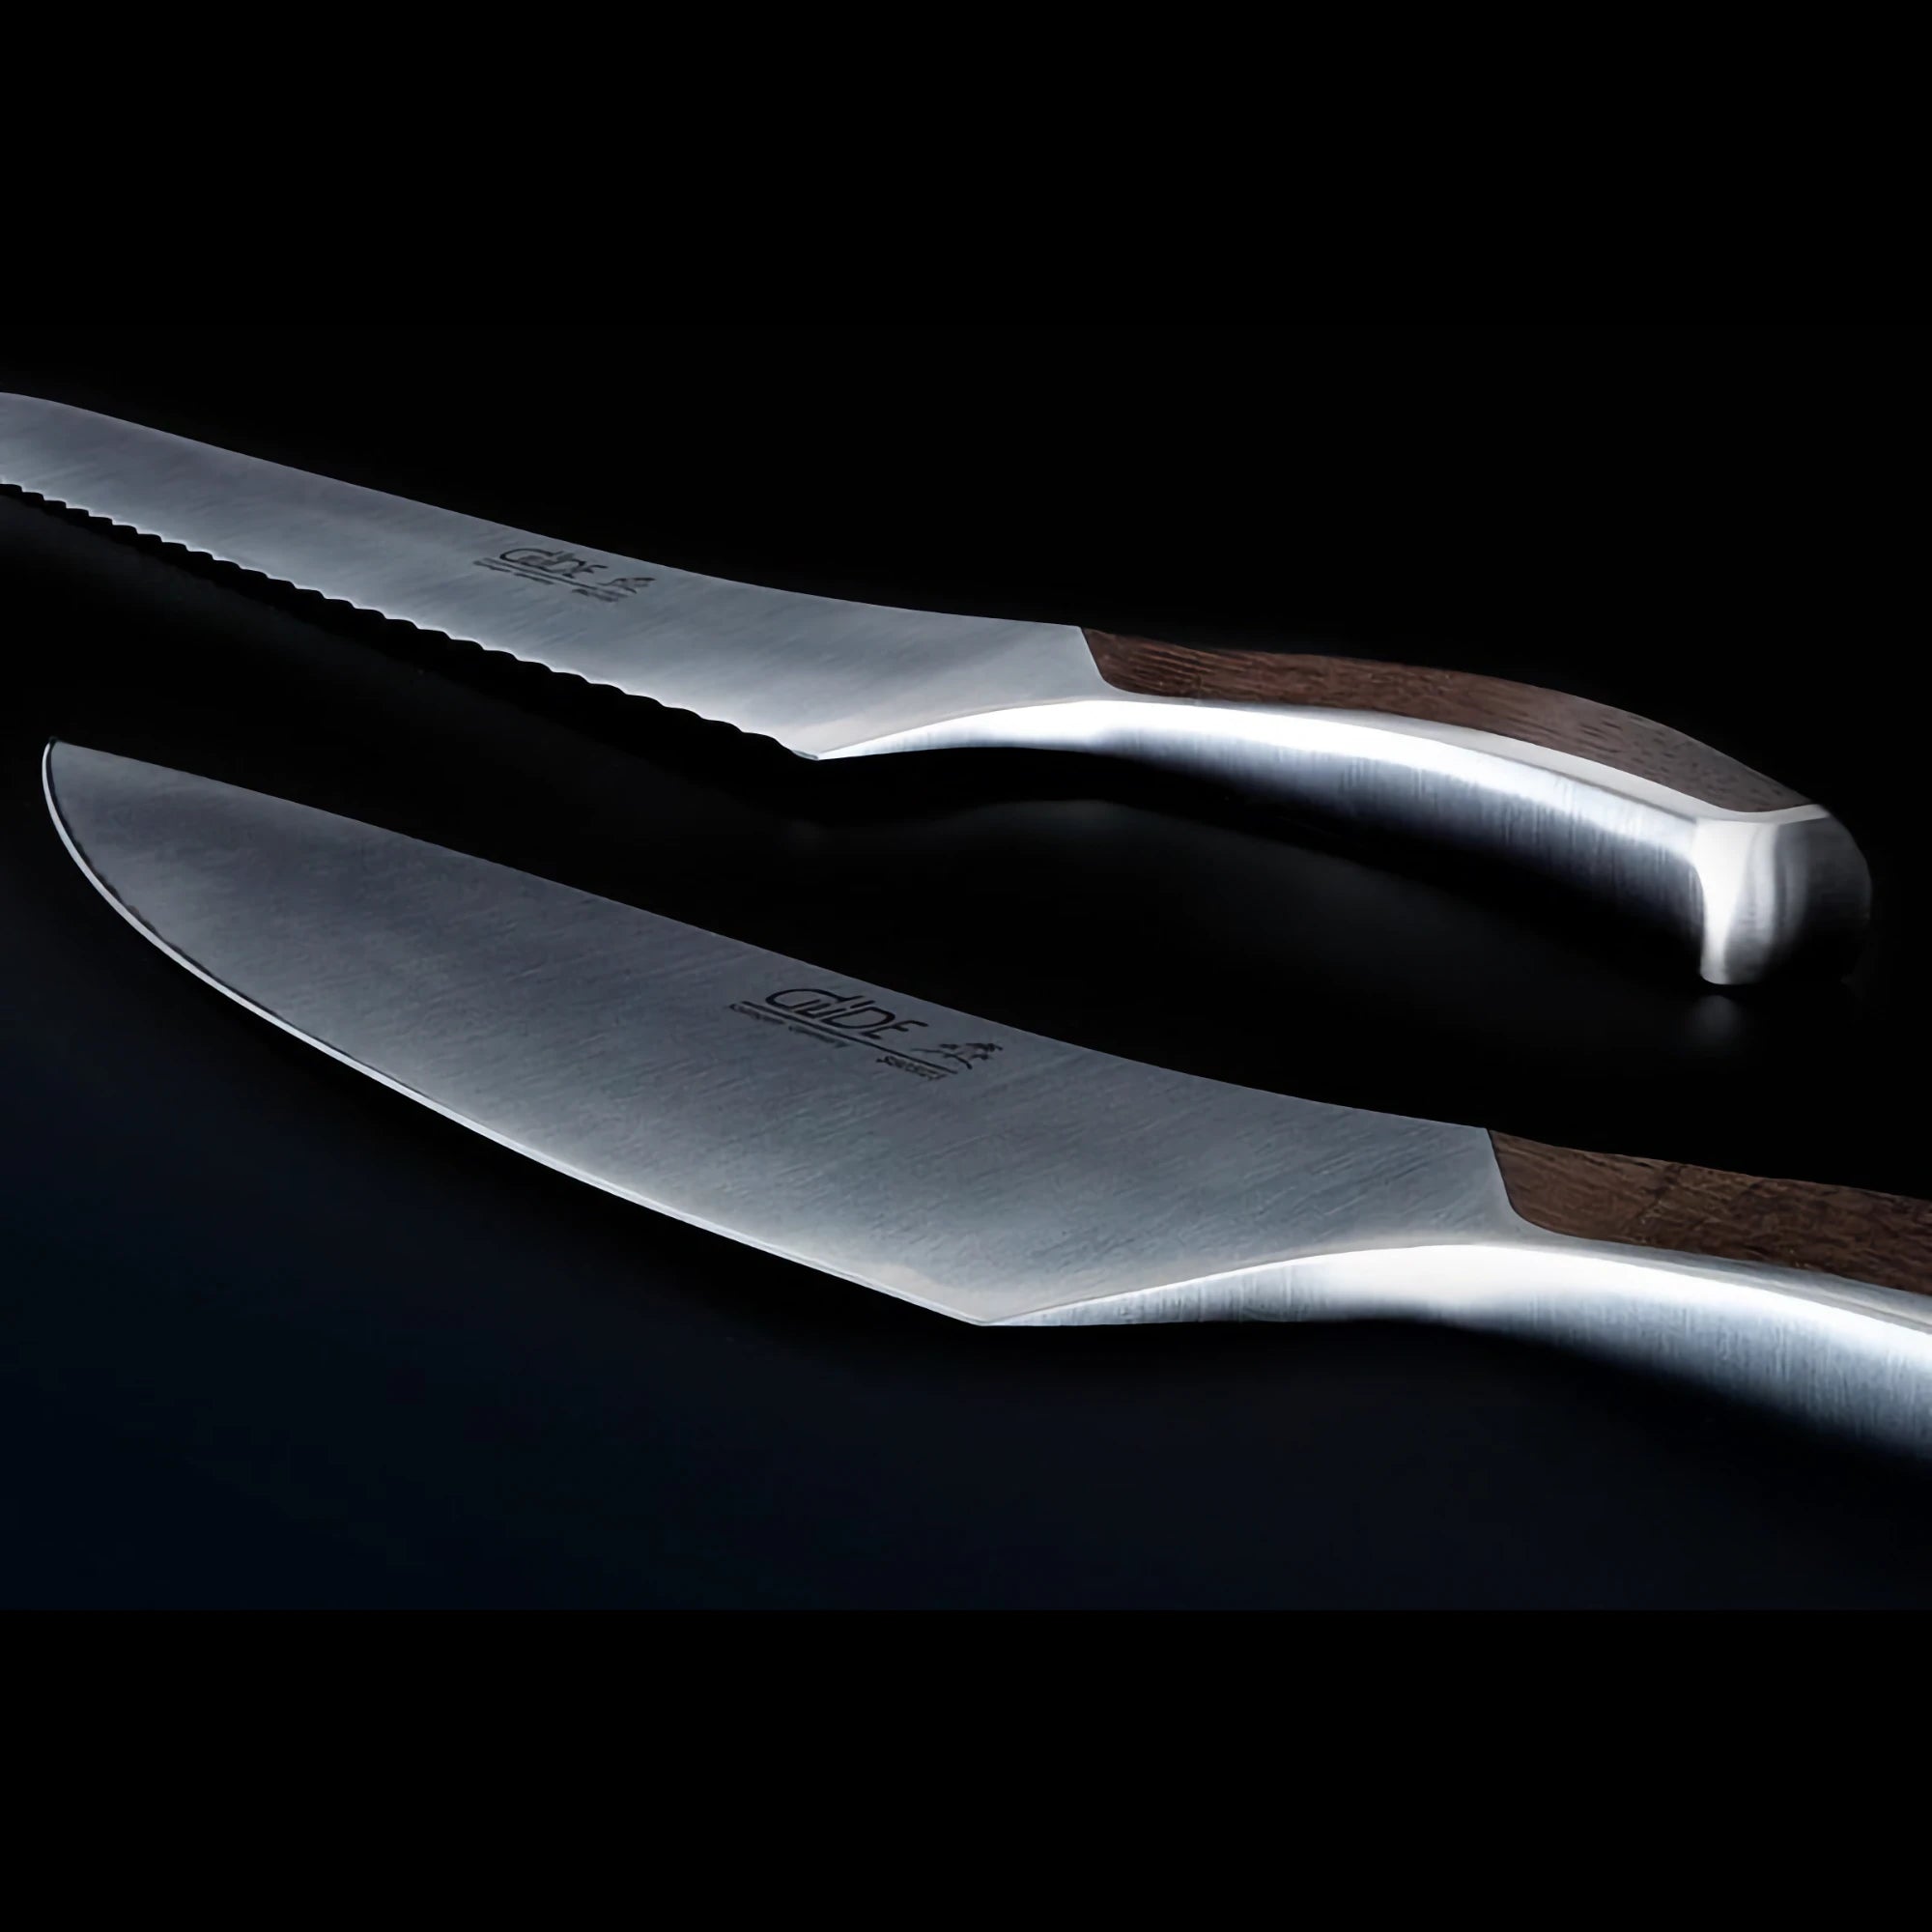 The Innovation of GÜDE SOLINGEN SYNCHROS Knives